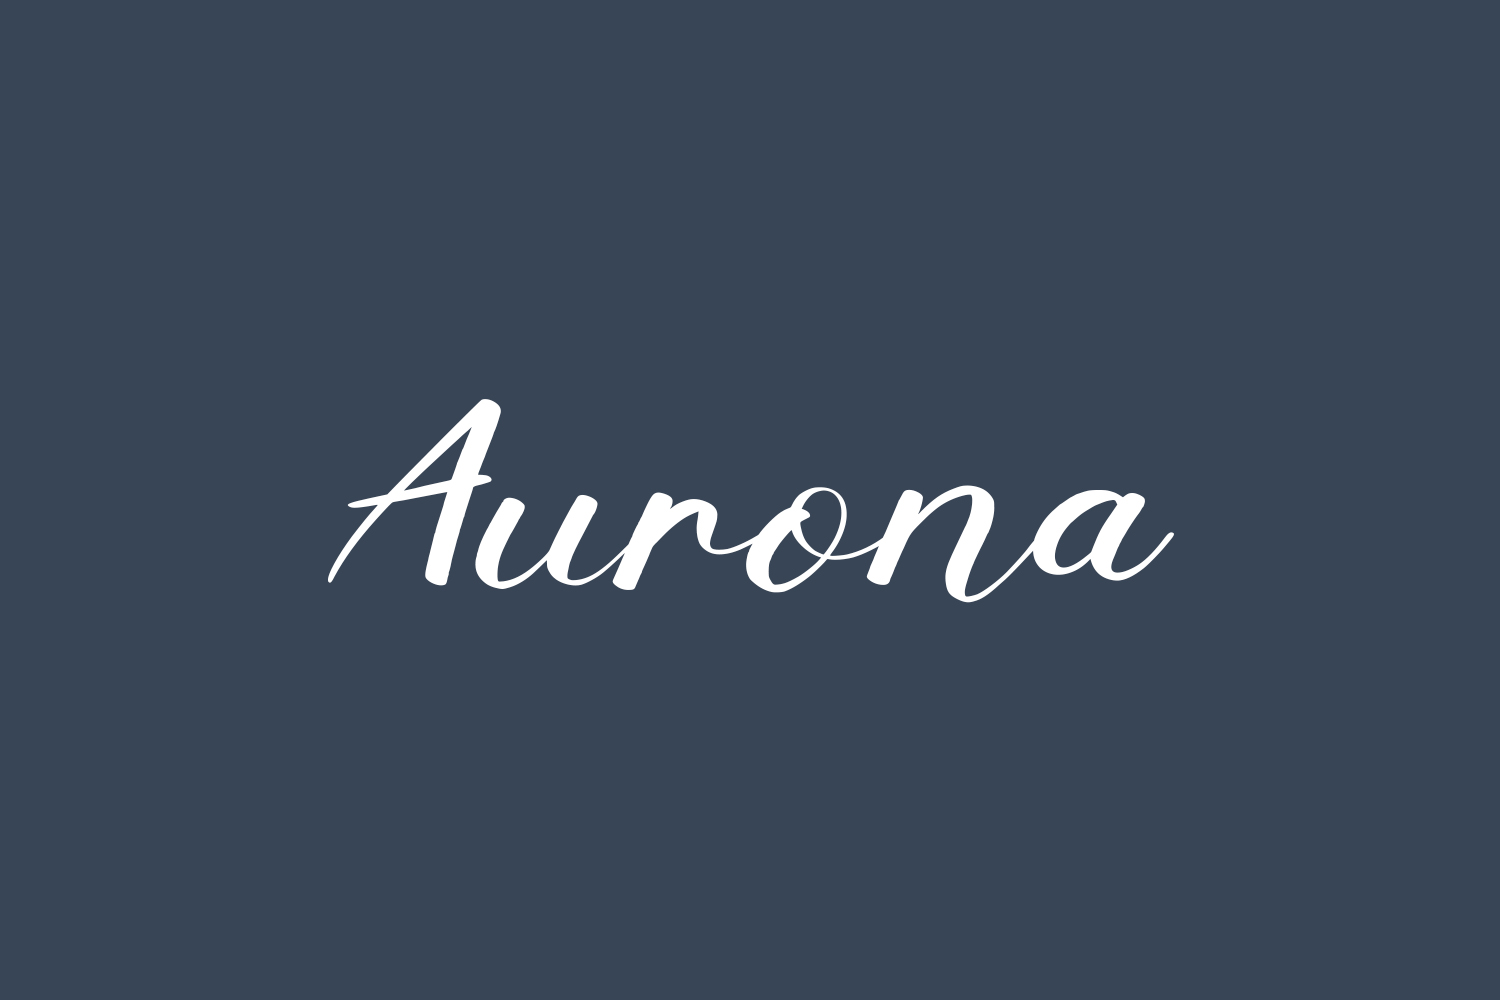 Aurona Free Font